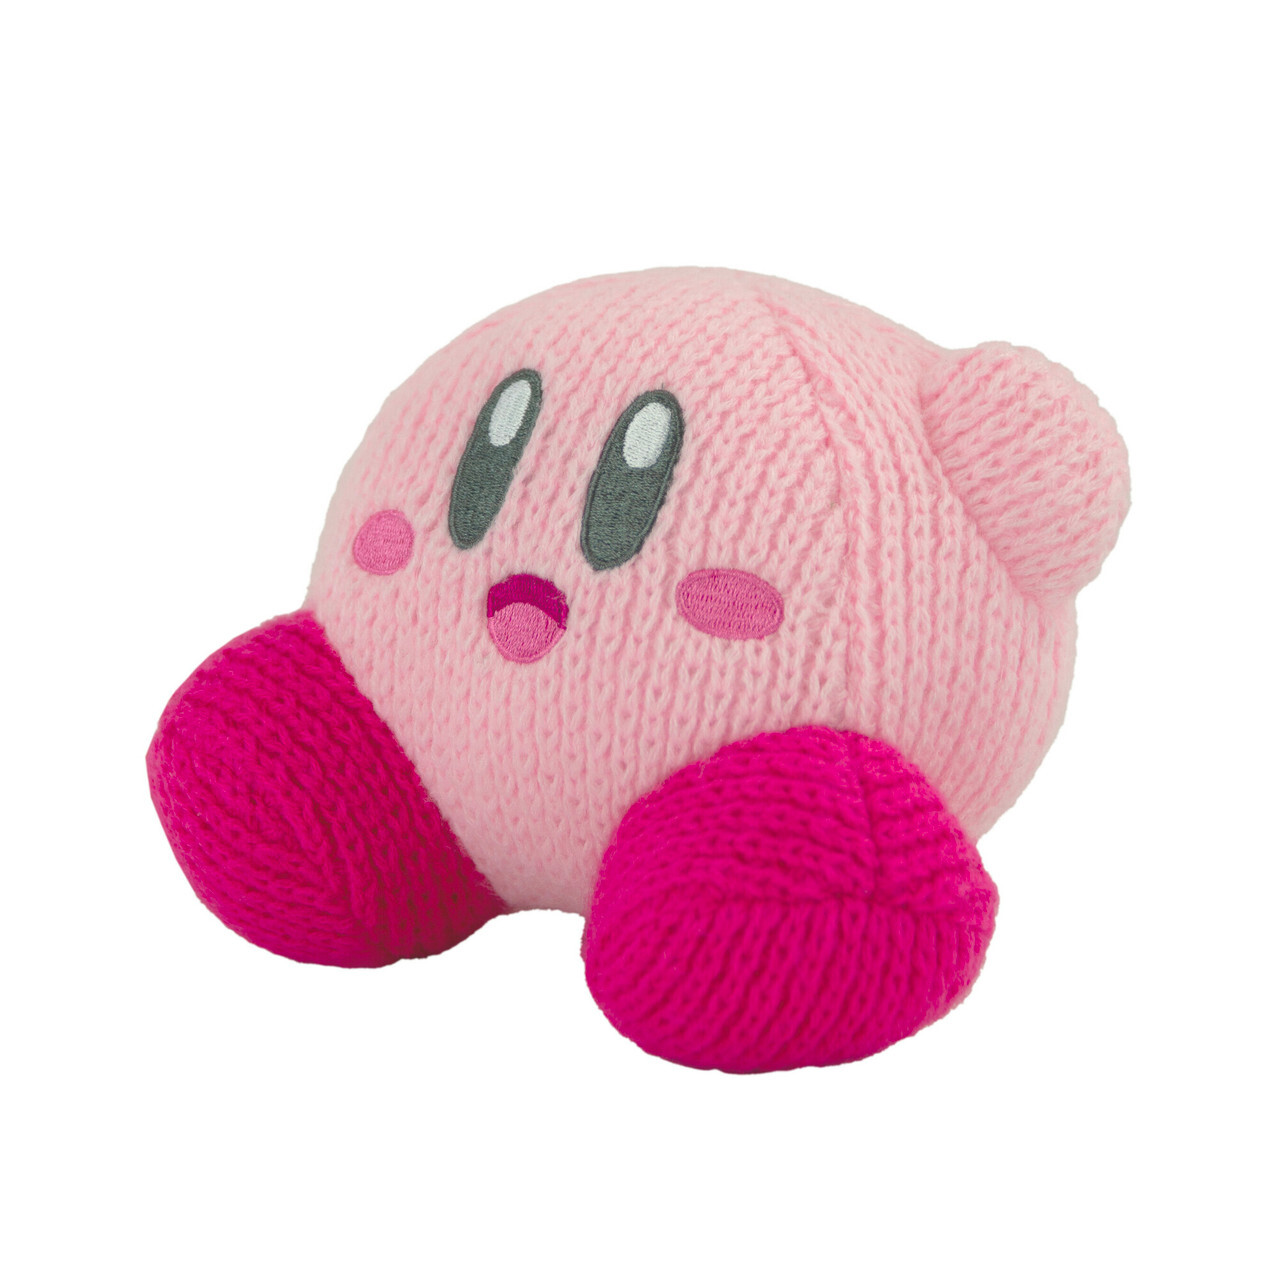 Waving Kirby Kirby’s Dreamland TOMY Nuiguru-Knit Plush (1)